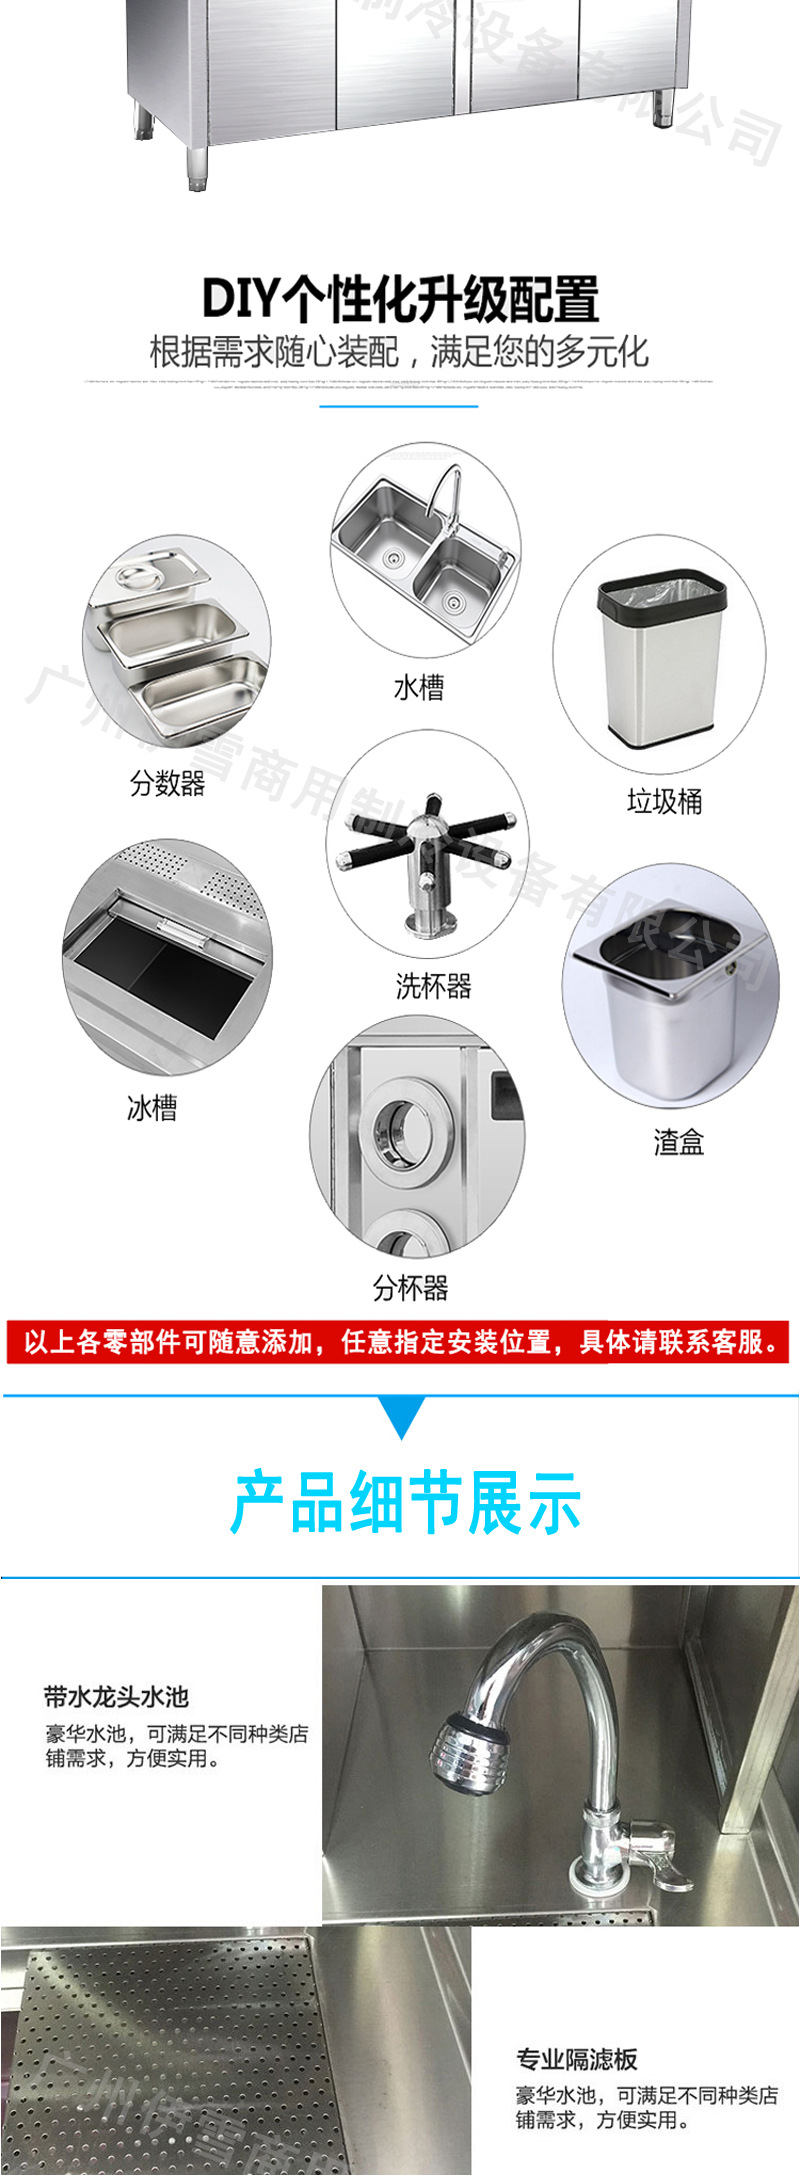 商用不锈钢水吧台 非标操作台 可定做制冷柜或者常温柜 厂家直销示例图2